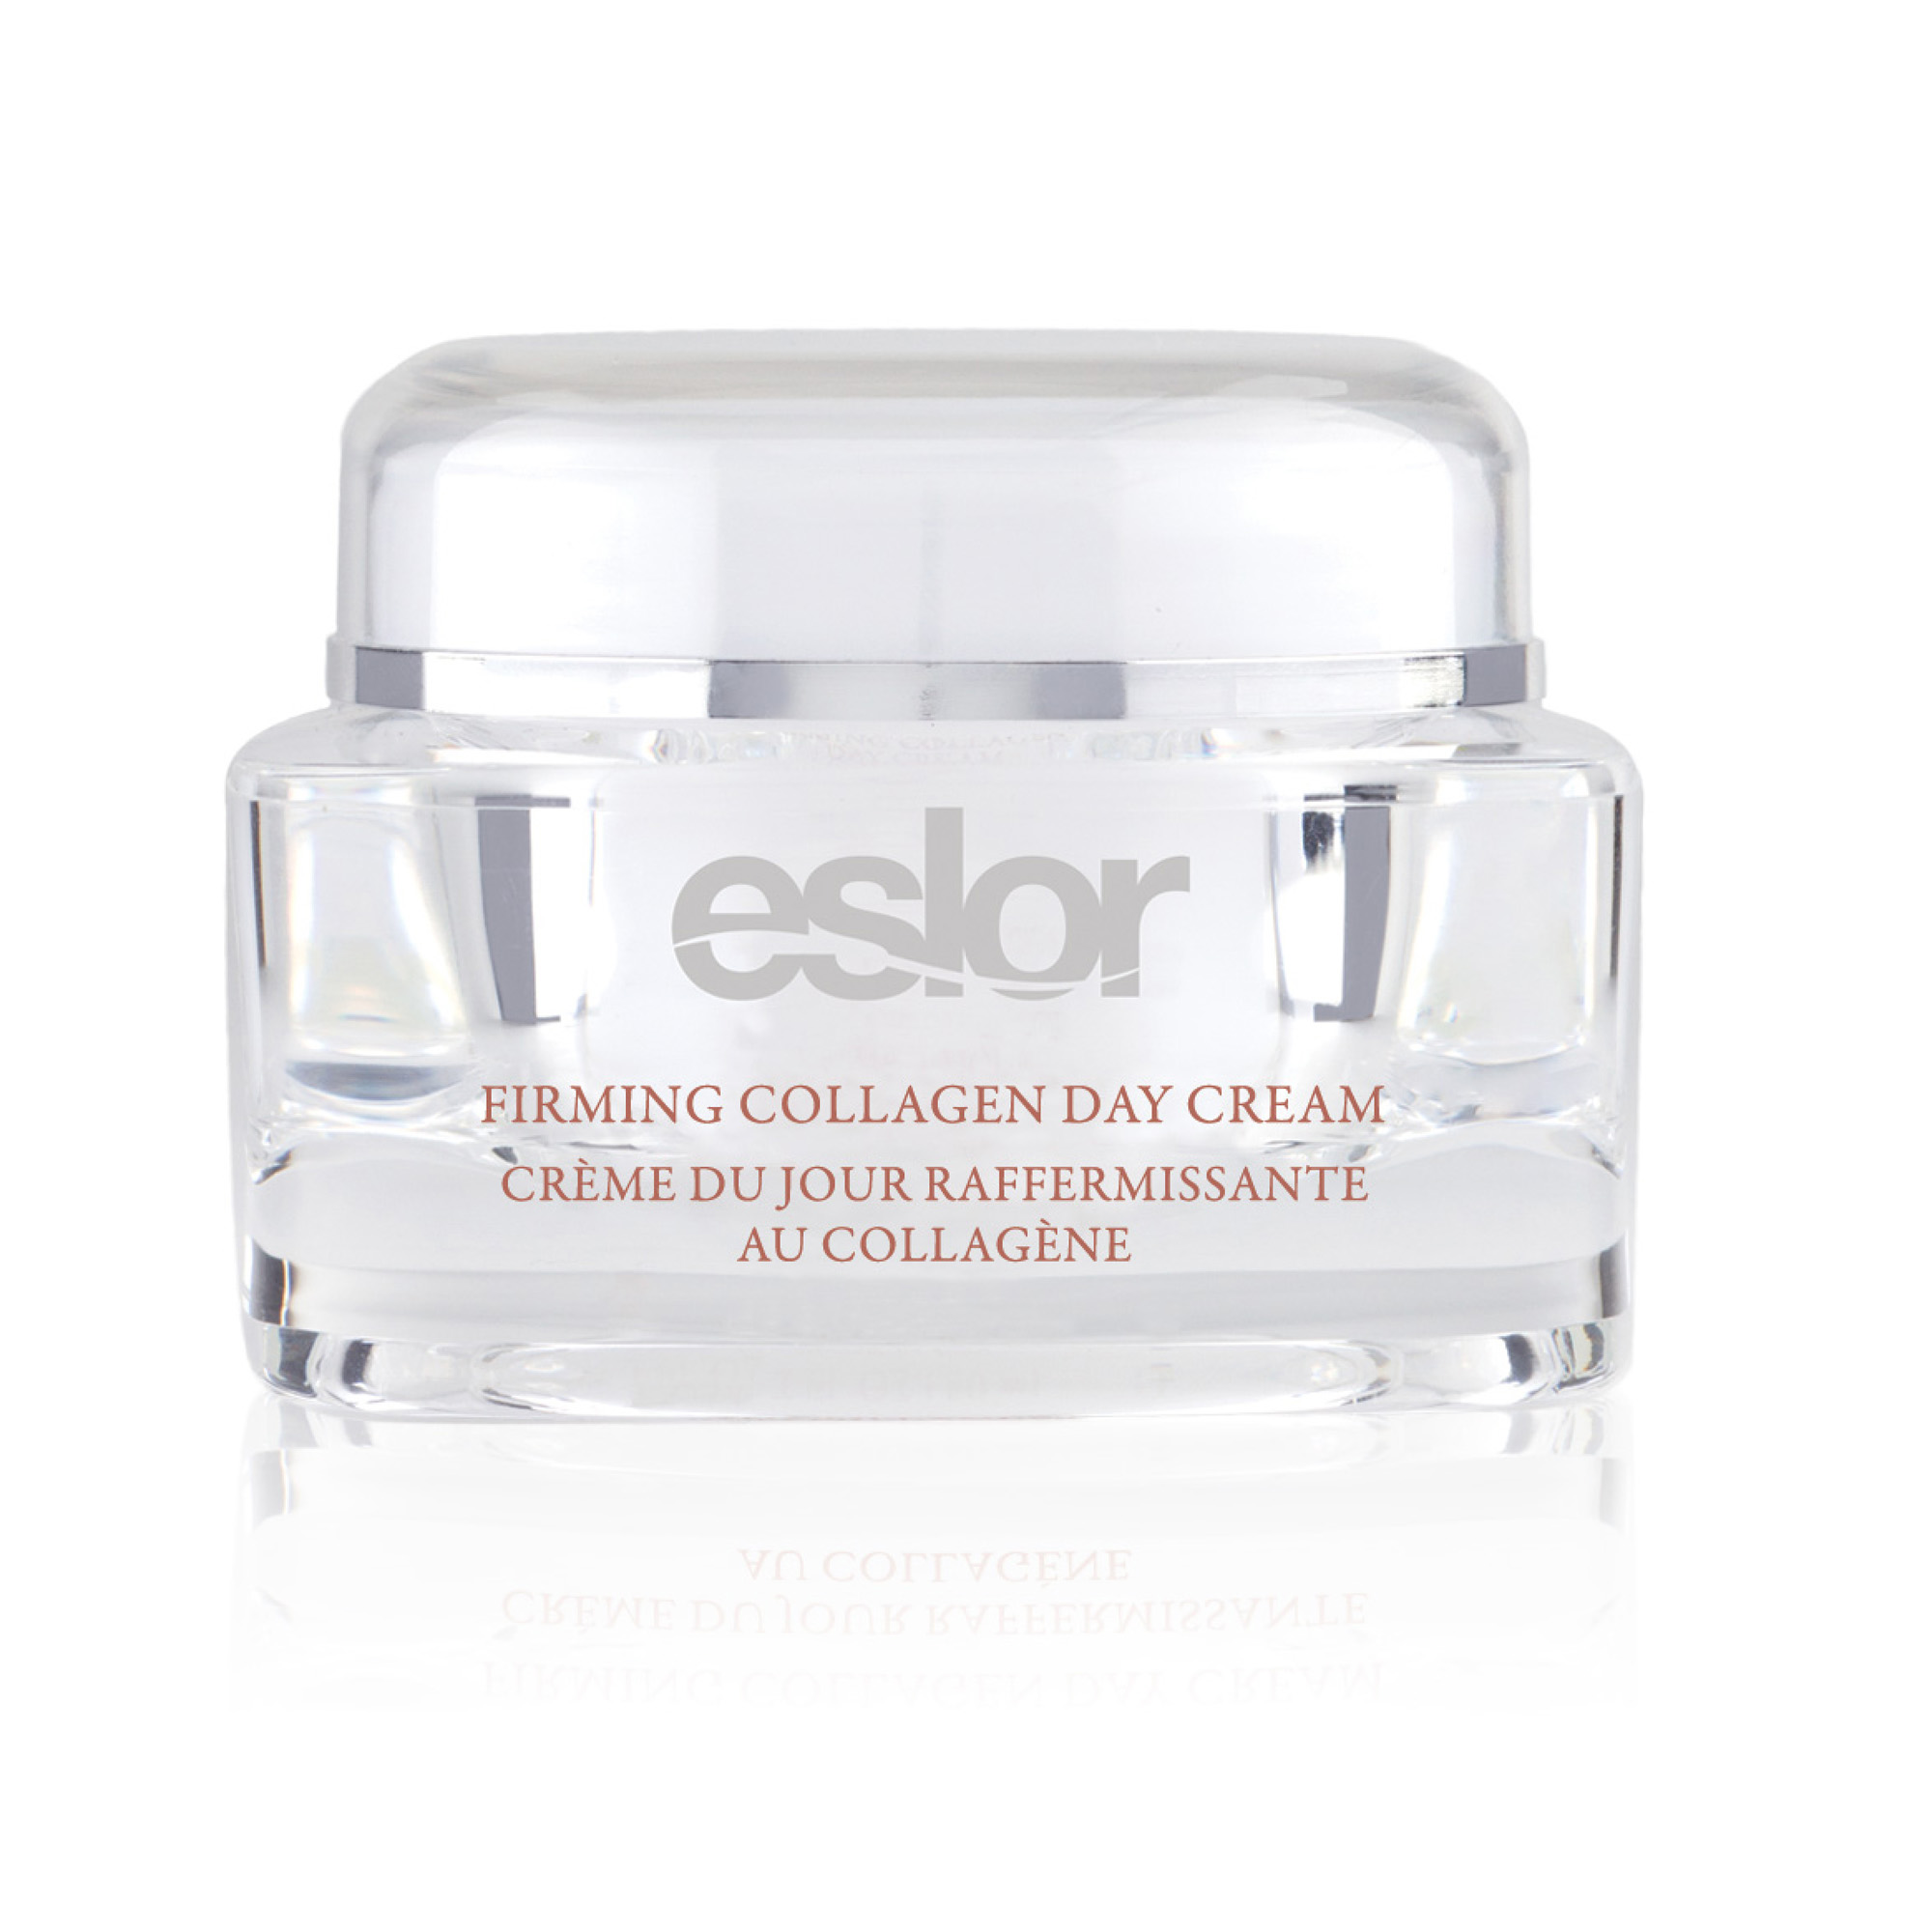 Eslor Firming Collagen Day Cream 1.7 fl. oz.